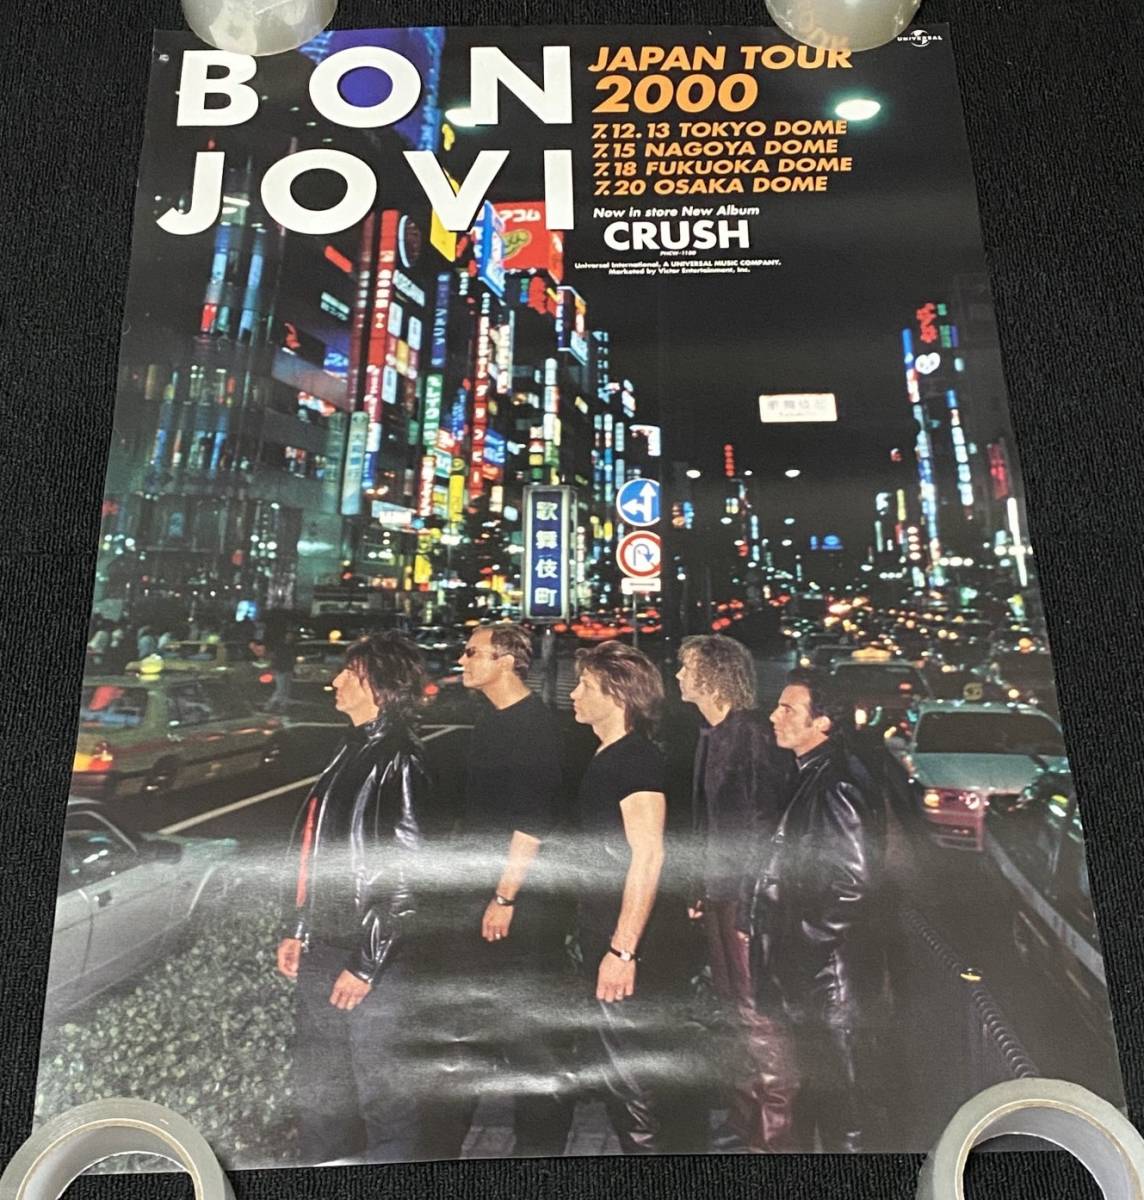 6808/bon* jovi poster /JAPAN TOUR 2000 CRUSH BON JOVI / B2 size 